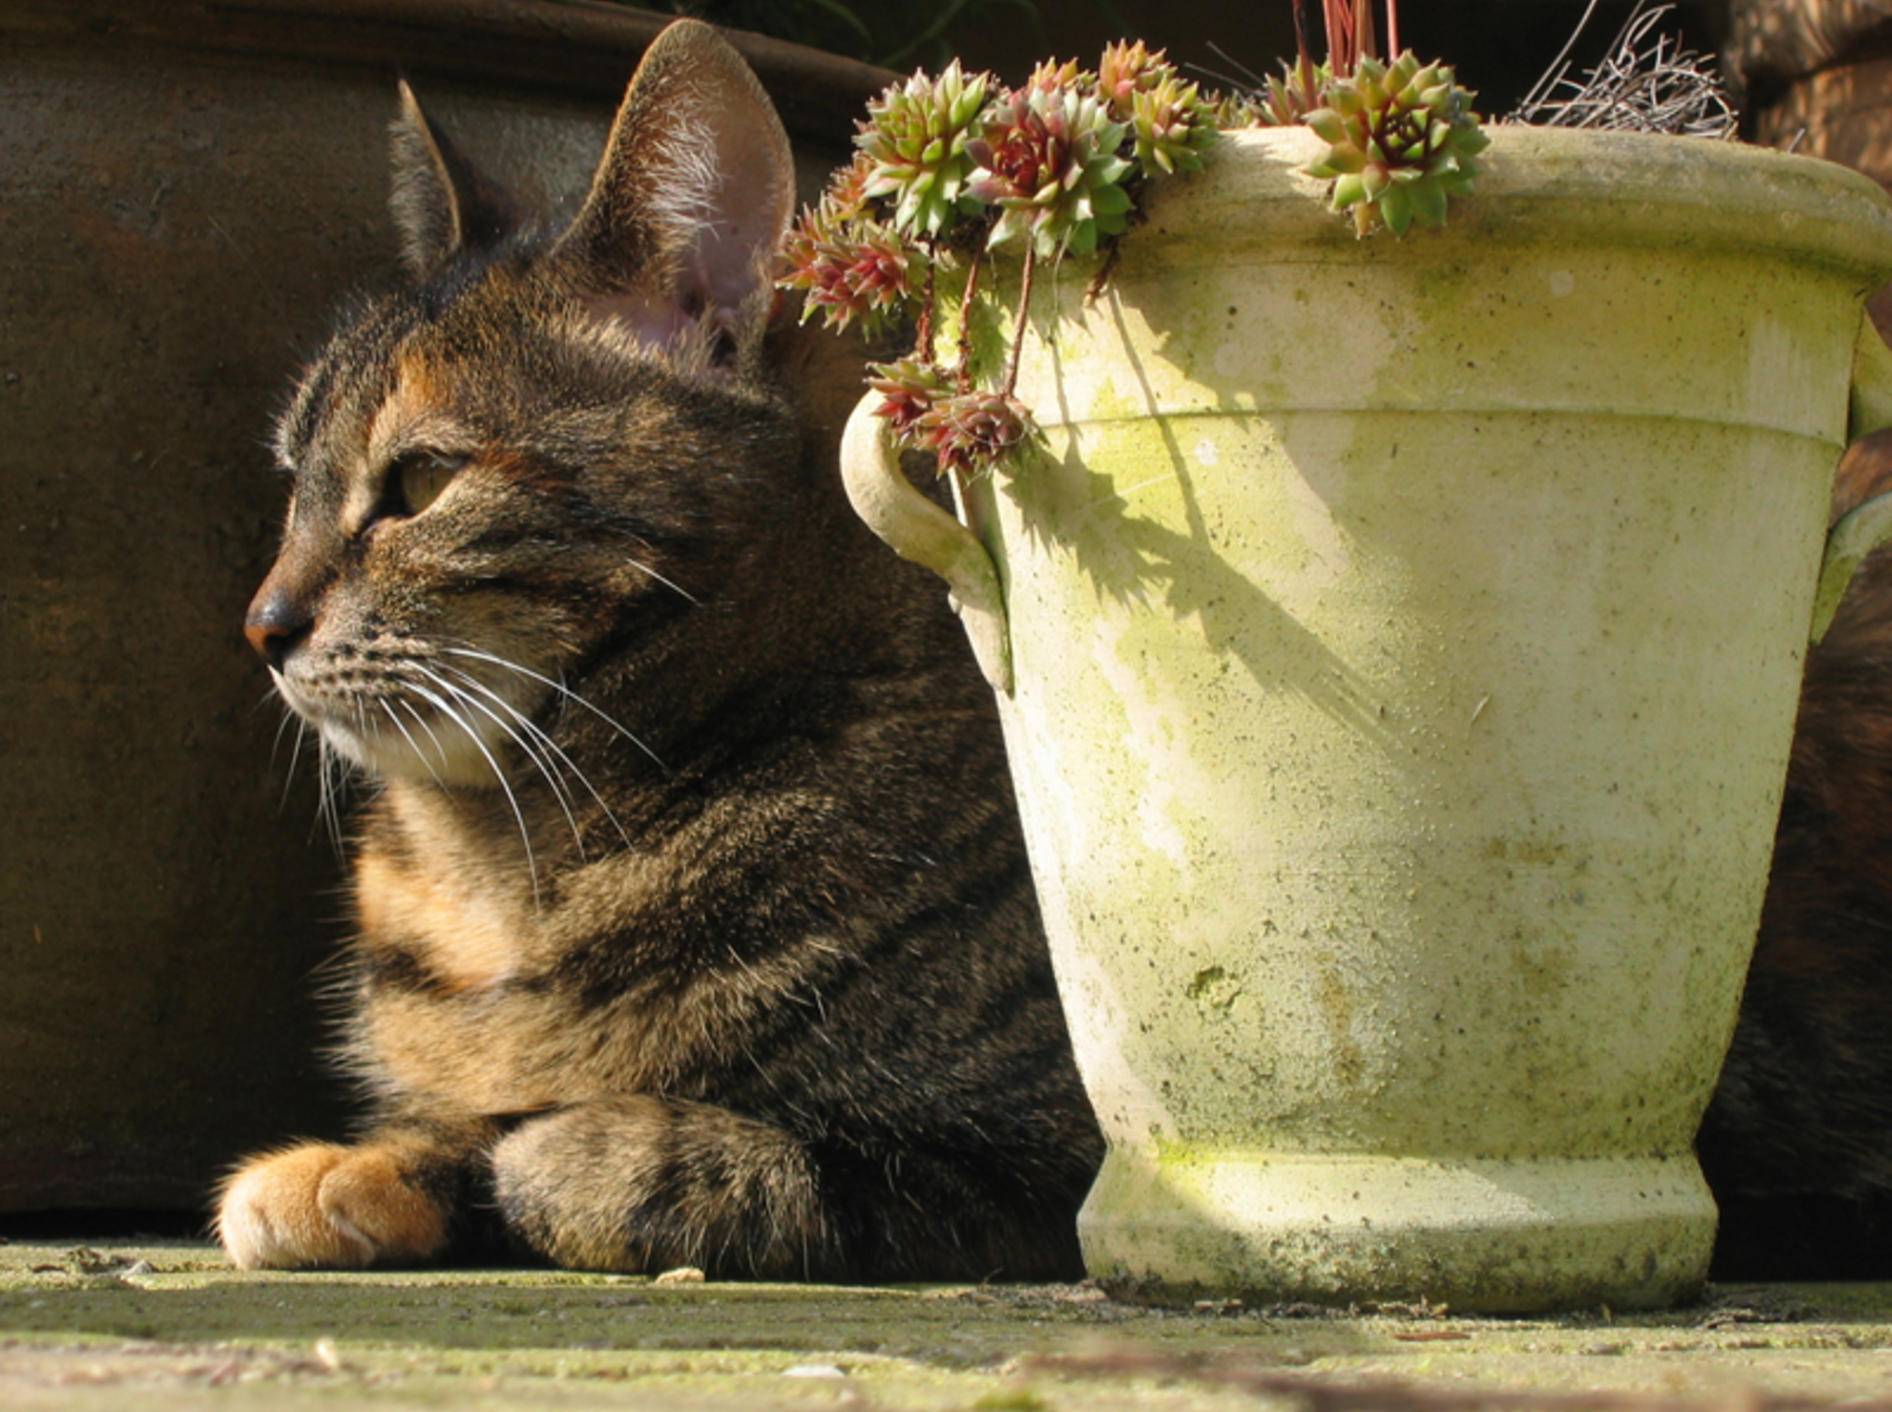 Topfpflanzen schützen Katzen vor einem Sonnenstich – Shutterstock / Keimpe Roedema